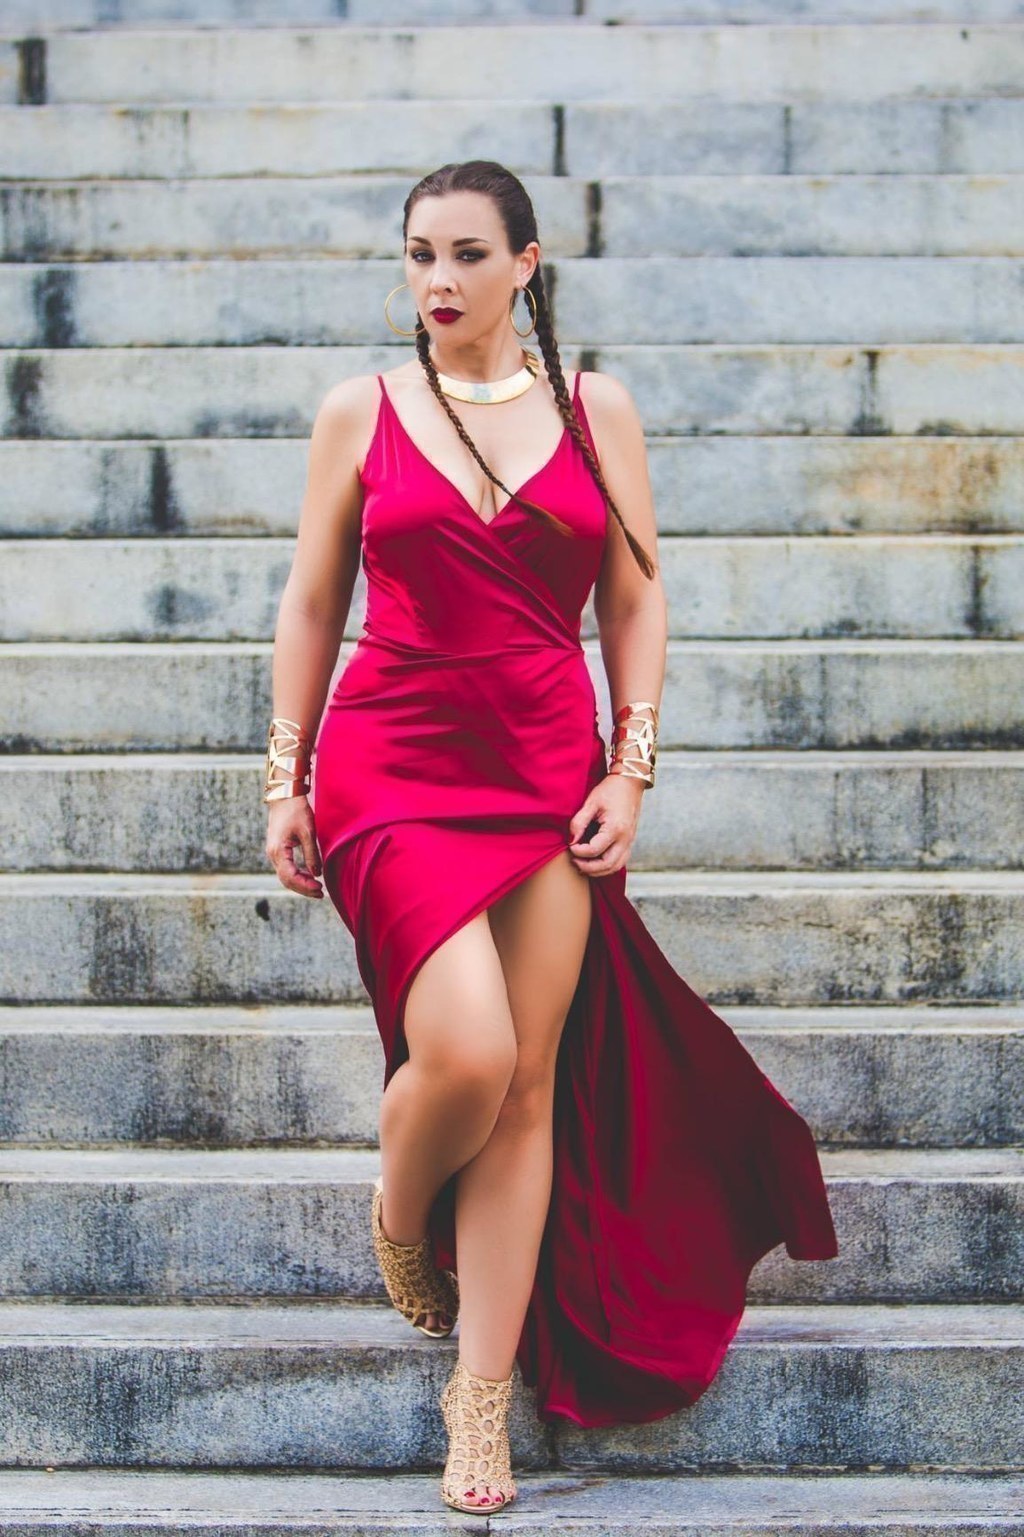 Buy Label RITU KUMAR Red Printed Short Dress at Amazon.in